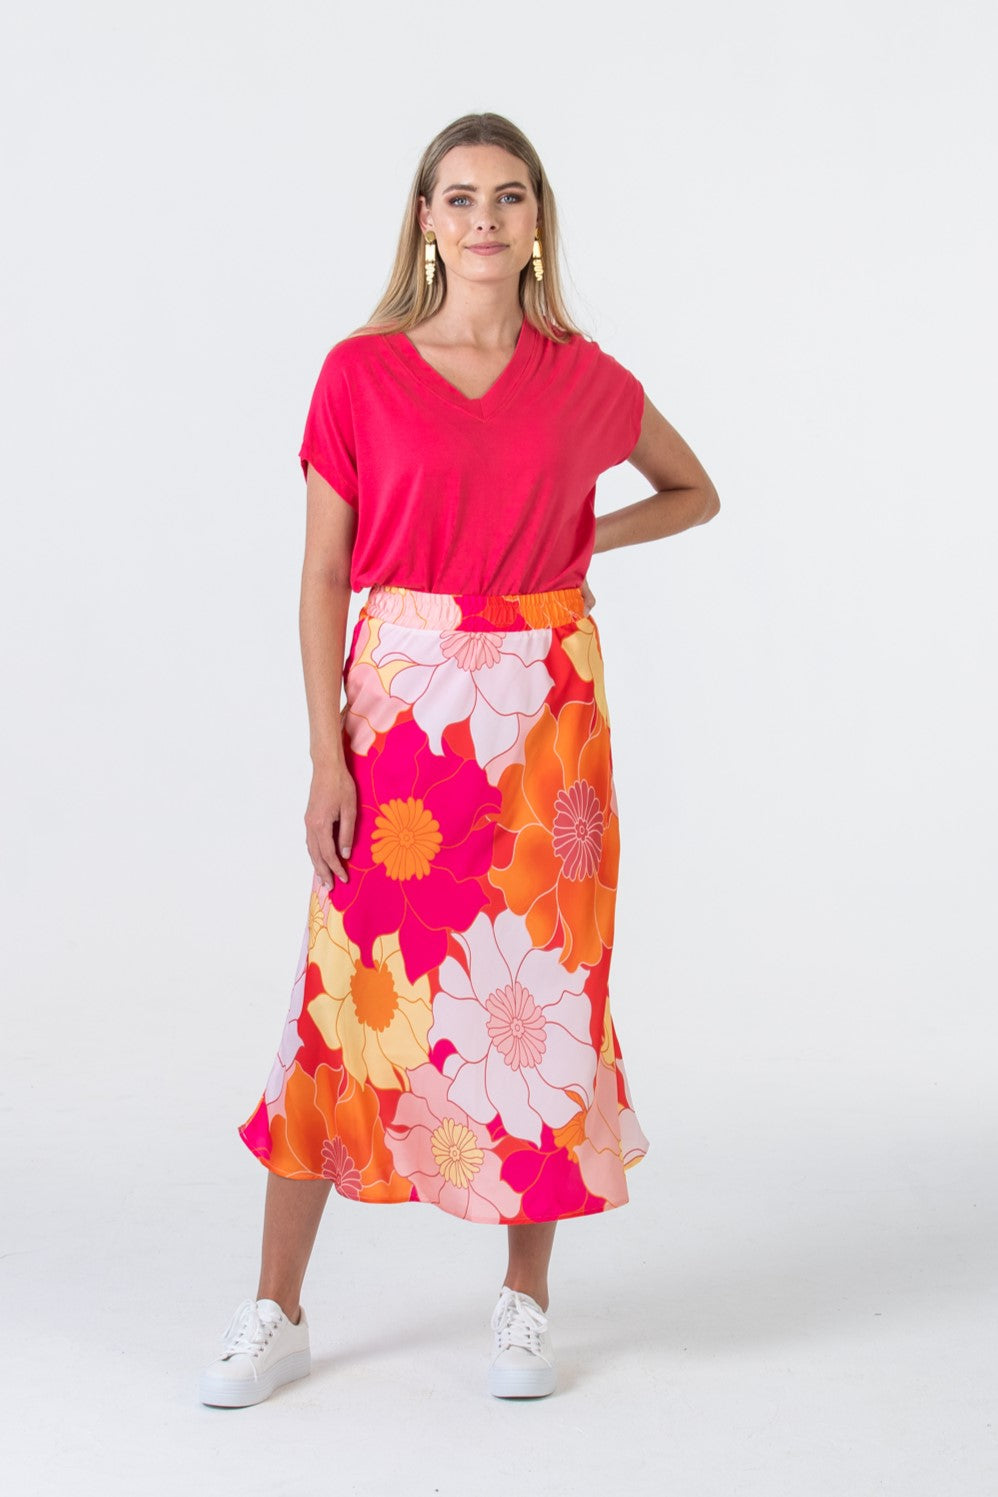 Paris A-Line skirt - Orange Blossom